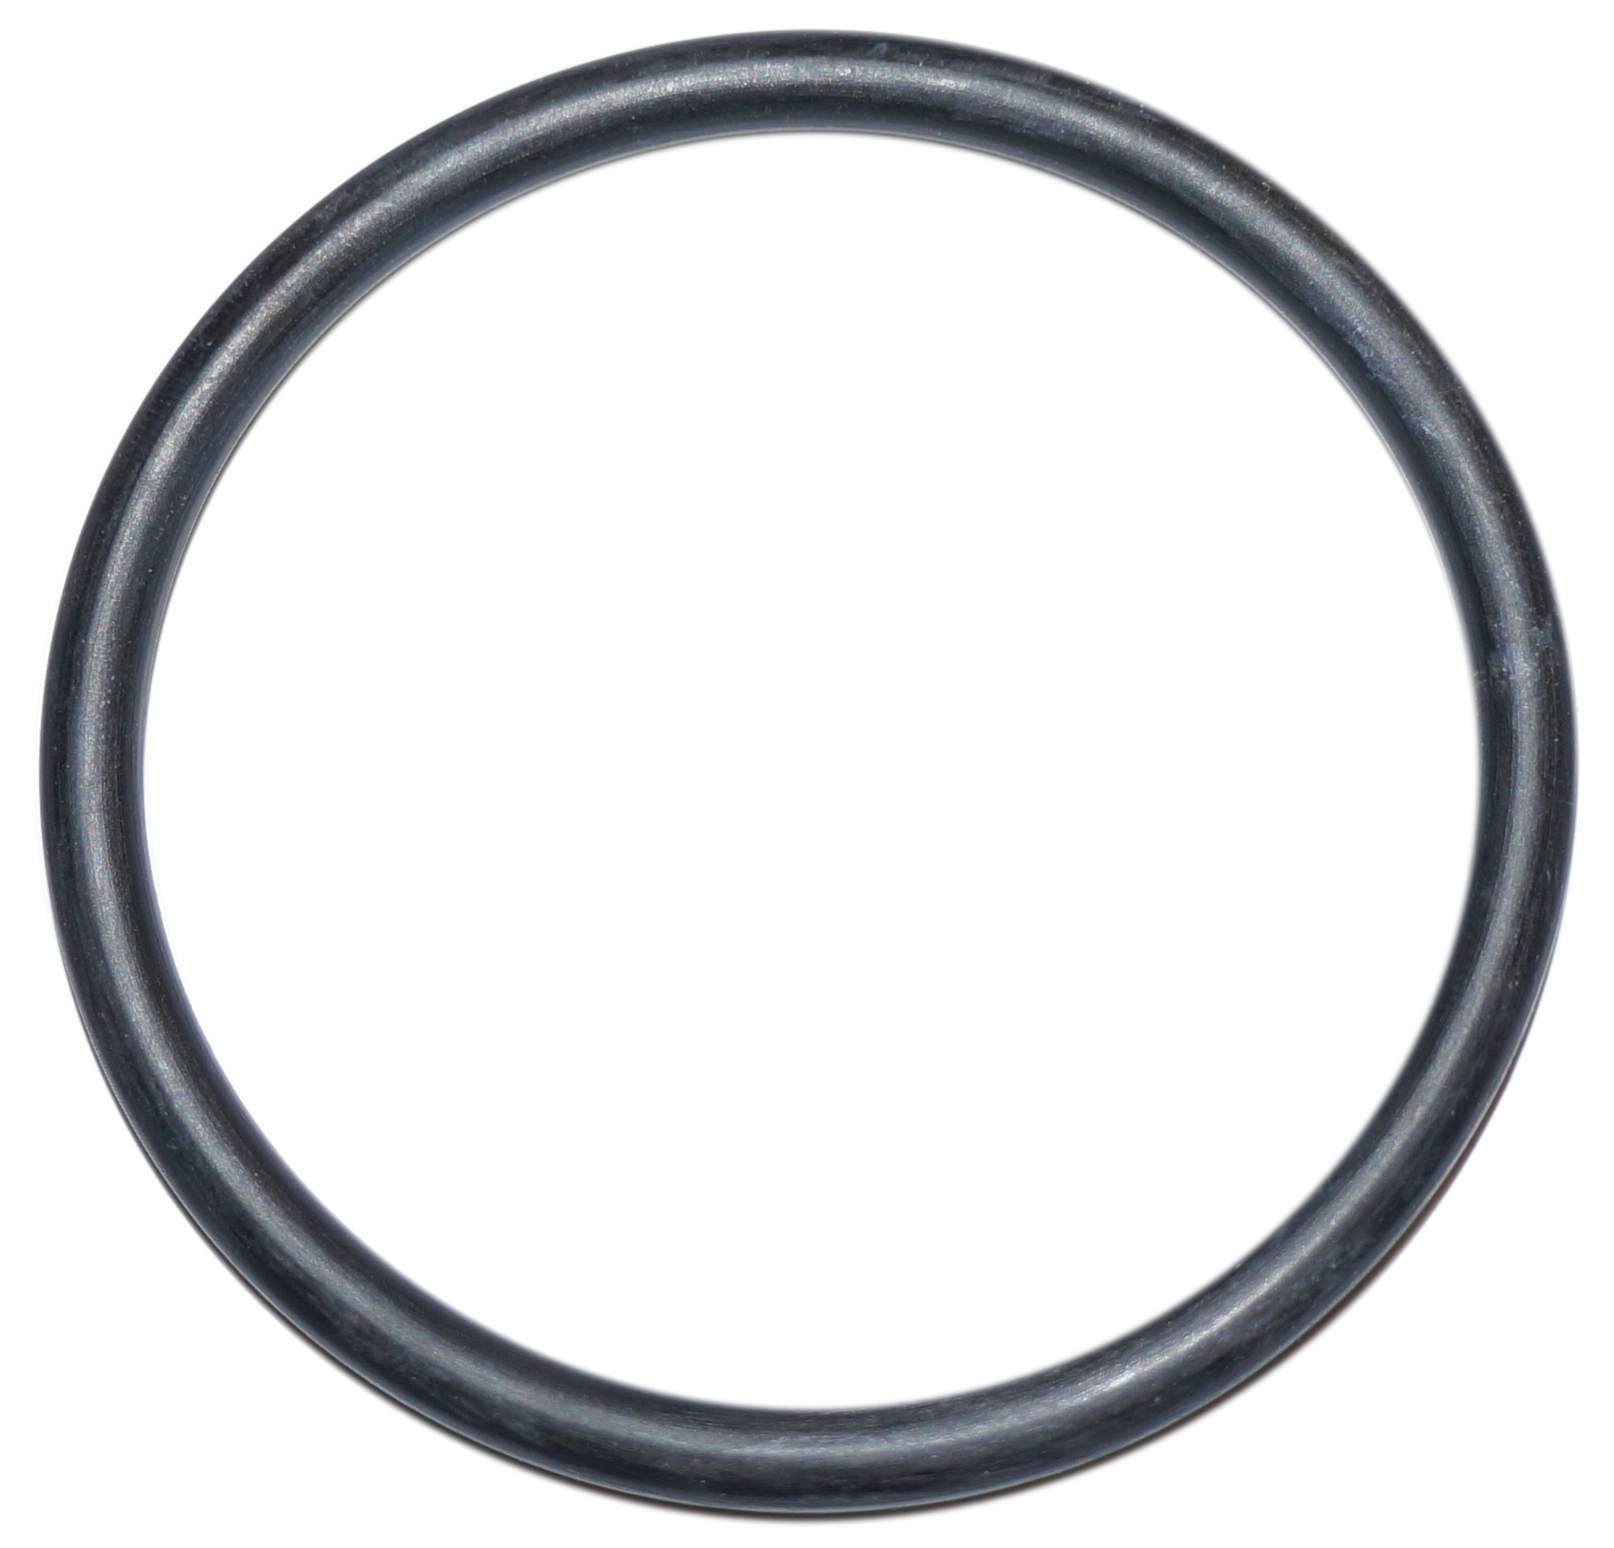 O-Ring mit 90 mm Durchmesser für die Wanddurchführung eines Schwimmbadfilters Ardeche